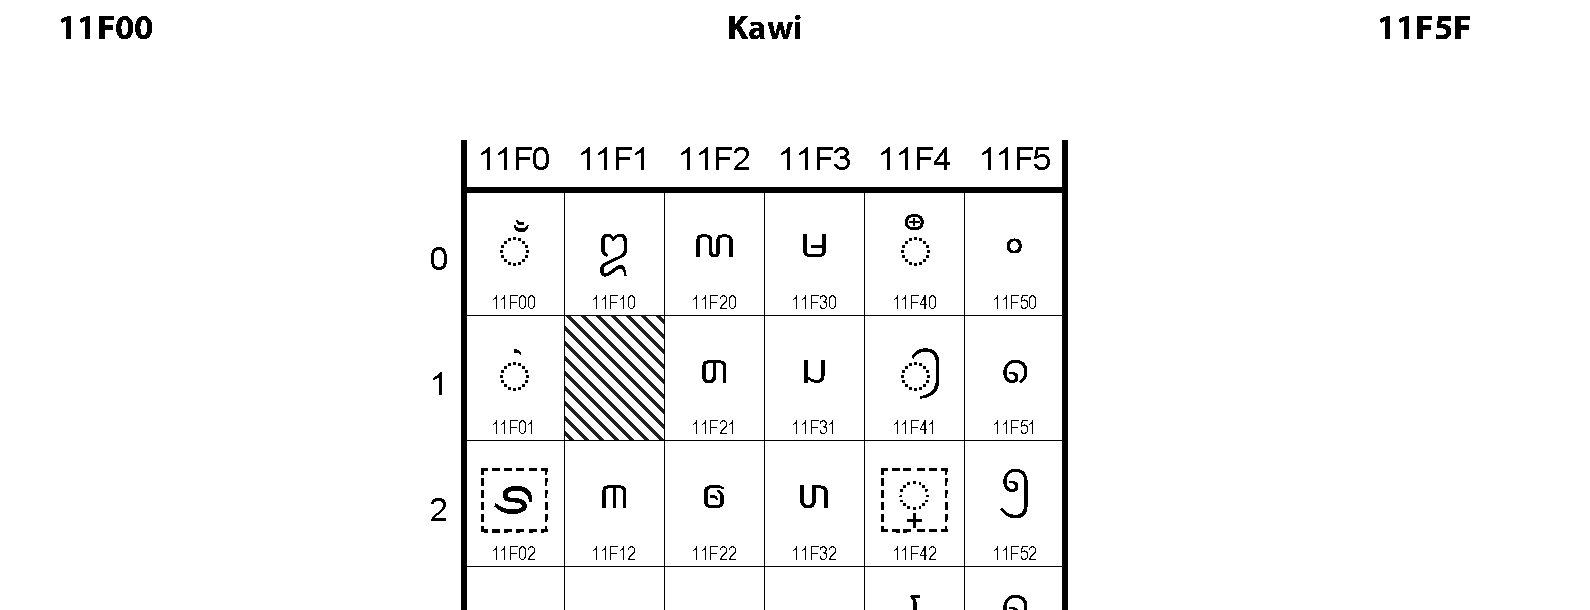 Unicode - Kawi